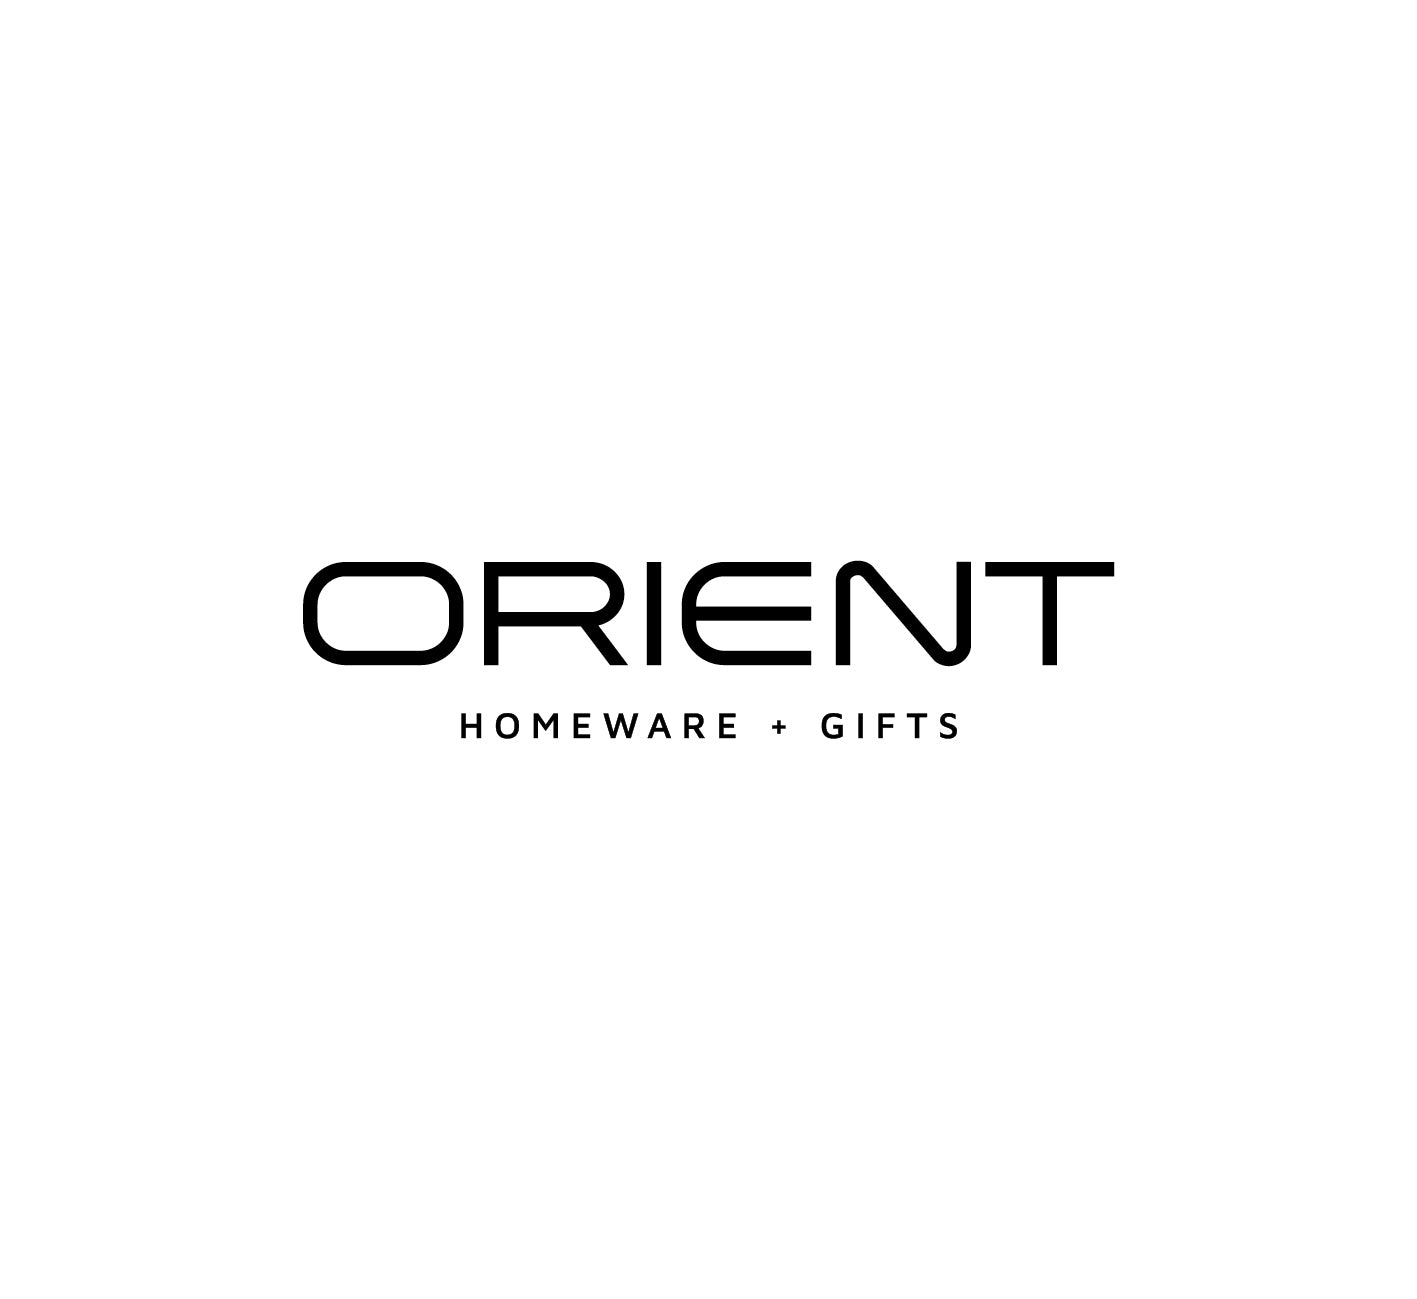 Orient: Homeware + Gifts